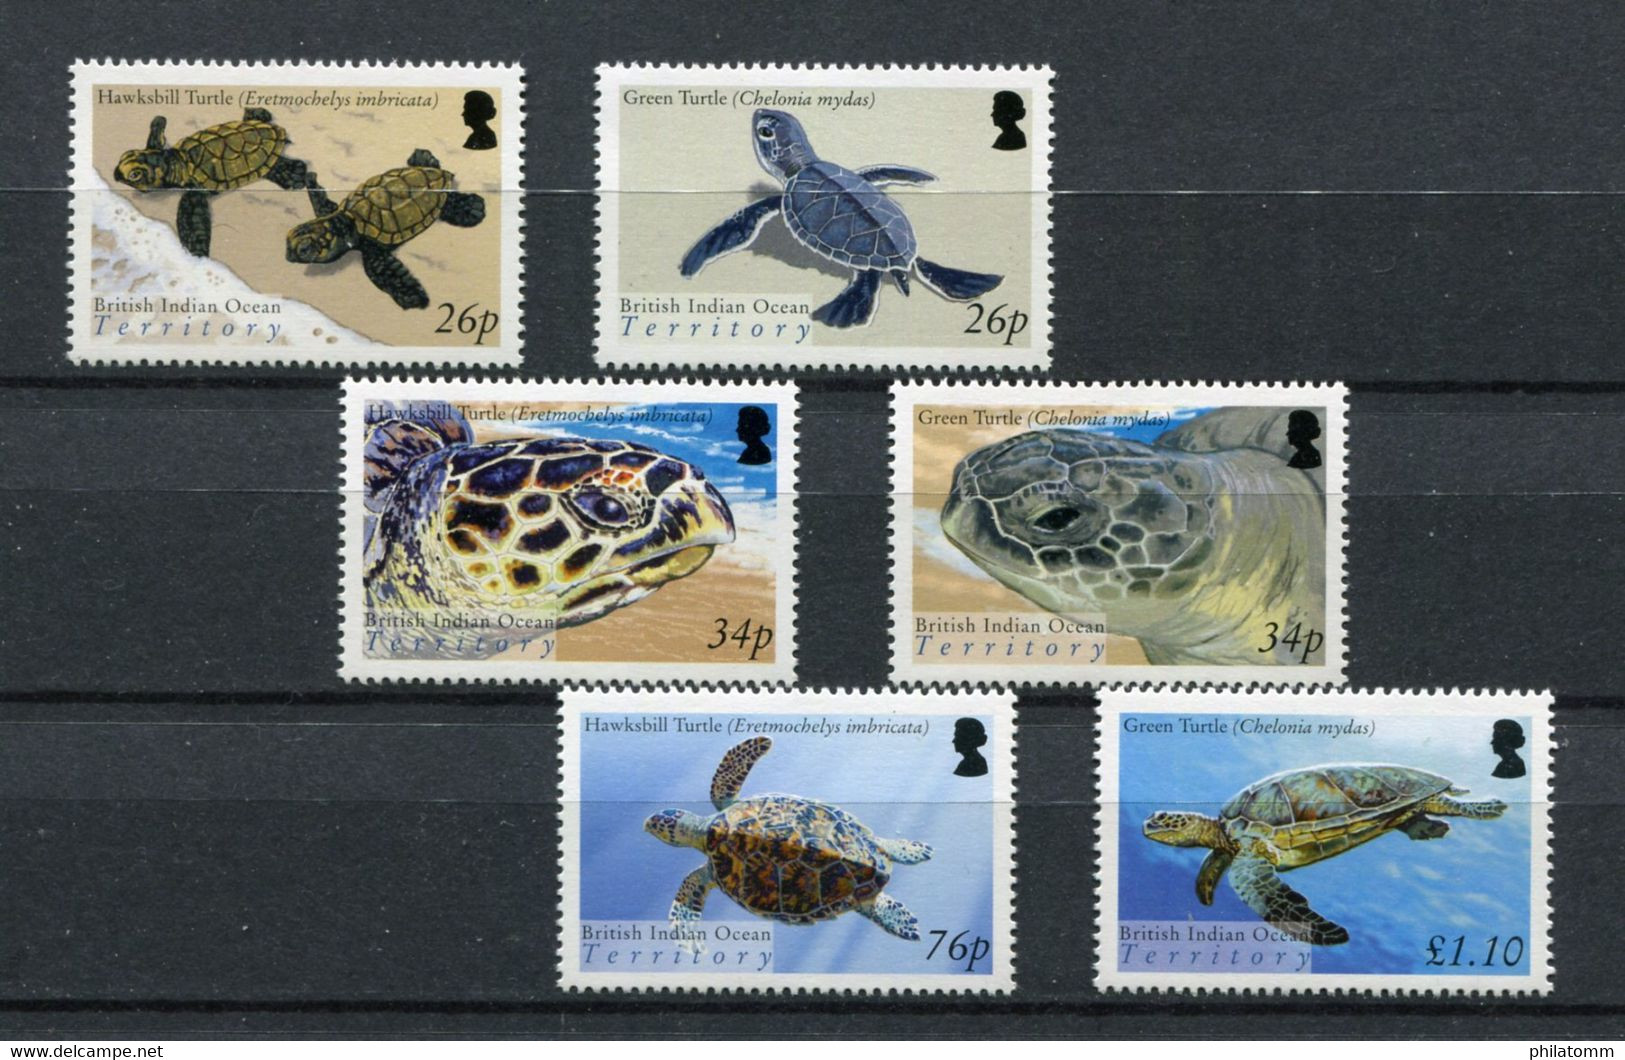 Britisches Territorium Im Indischen Ozean - Mi.Nr. 356 / 361 - "Meeresschildkröten" ** / MNH (aus Dem Jahr 2005) - British Indian Ocean Territory (BIOT)